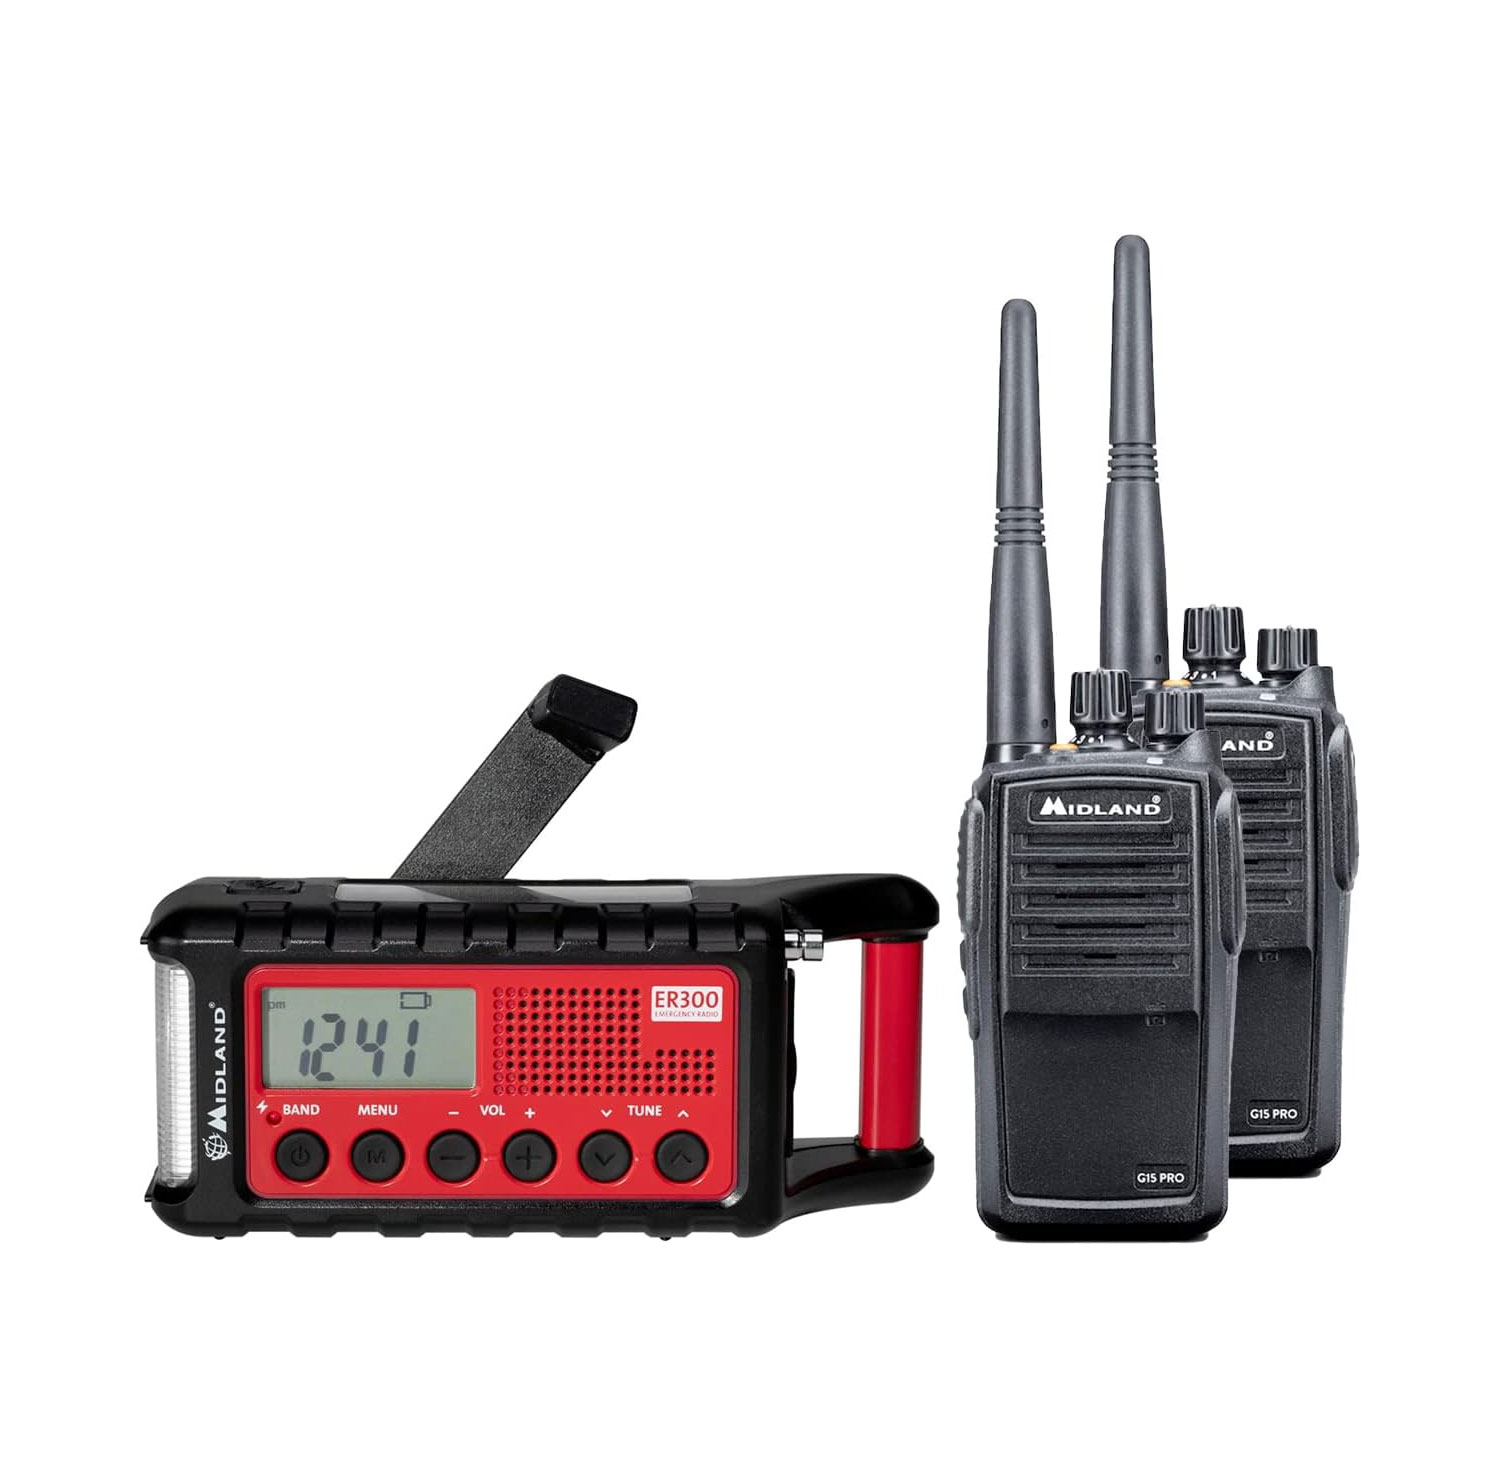 Albrecht PMR-Premium Notfallset bestehend aus ER 300 Radio und 2x Funkgeräte G15 Pro